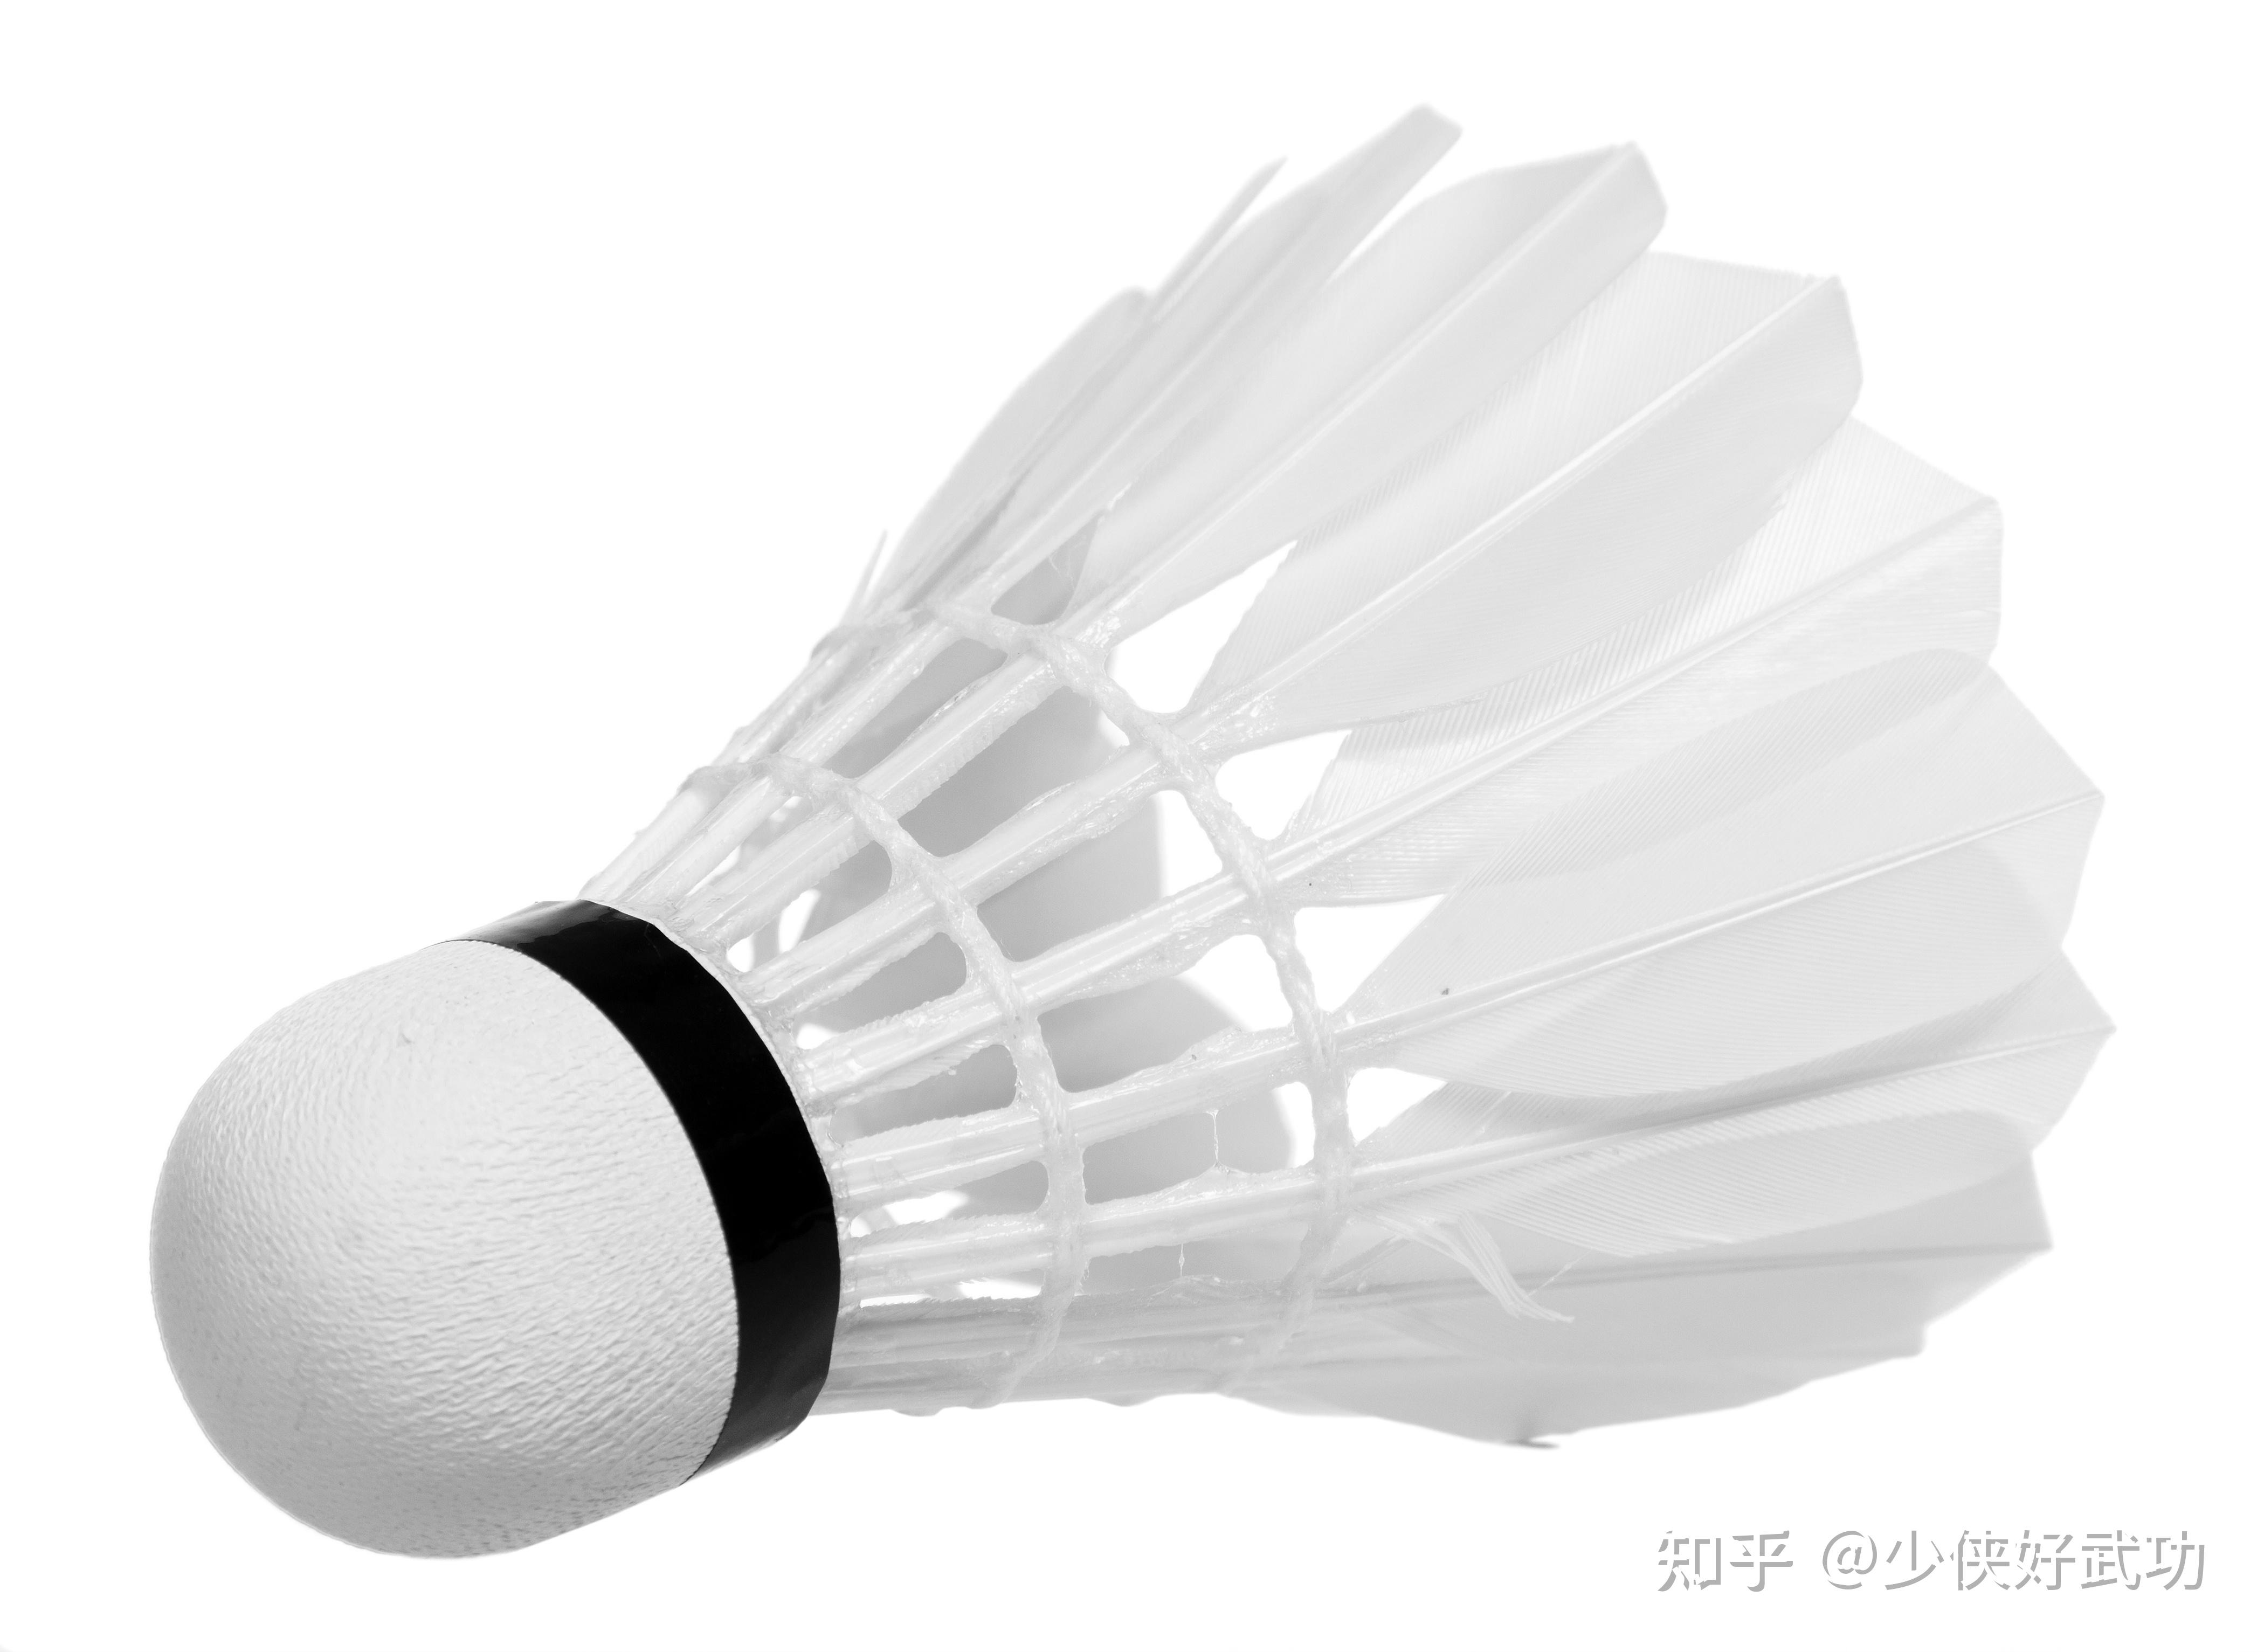 中国移动羽毛球邀请赛摄影图片-中国移动羽毛球邀请赛摄影作品-千库网